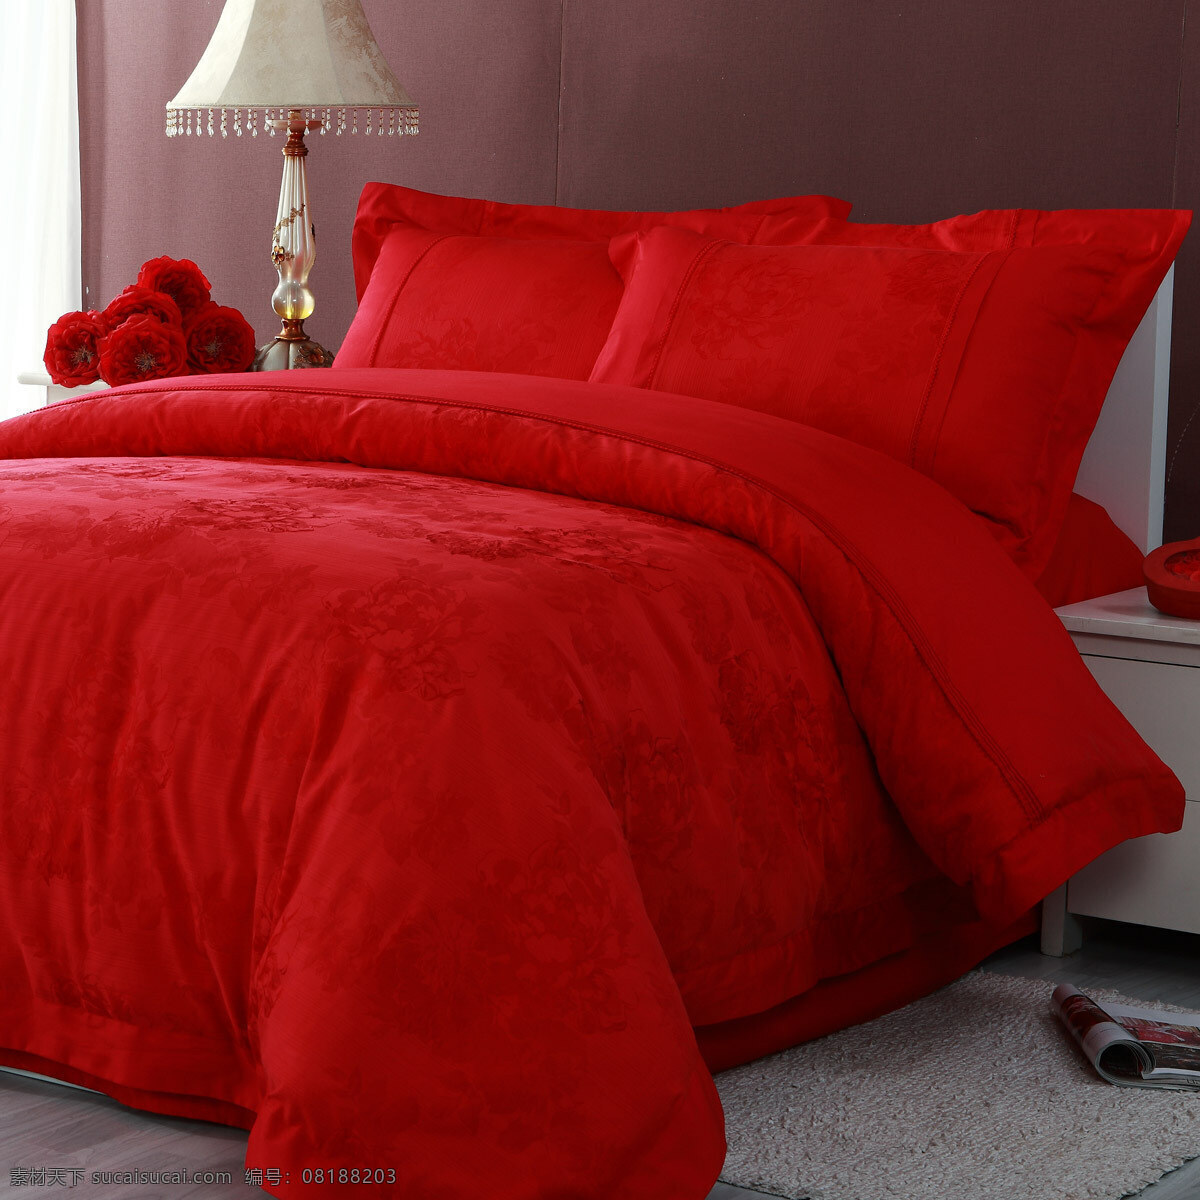 红色 床 右侧 室内 台灯 装饰 装饰素材 室内设计